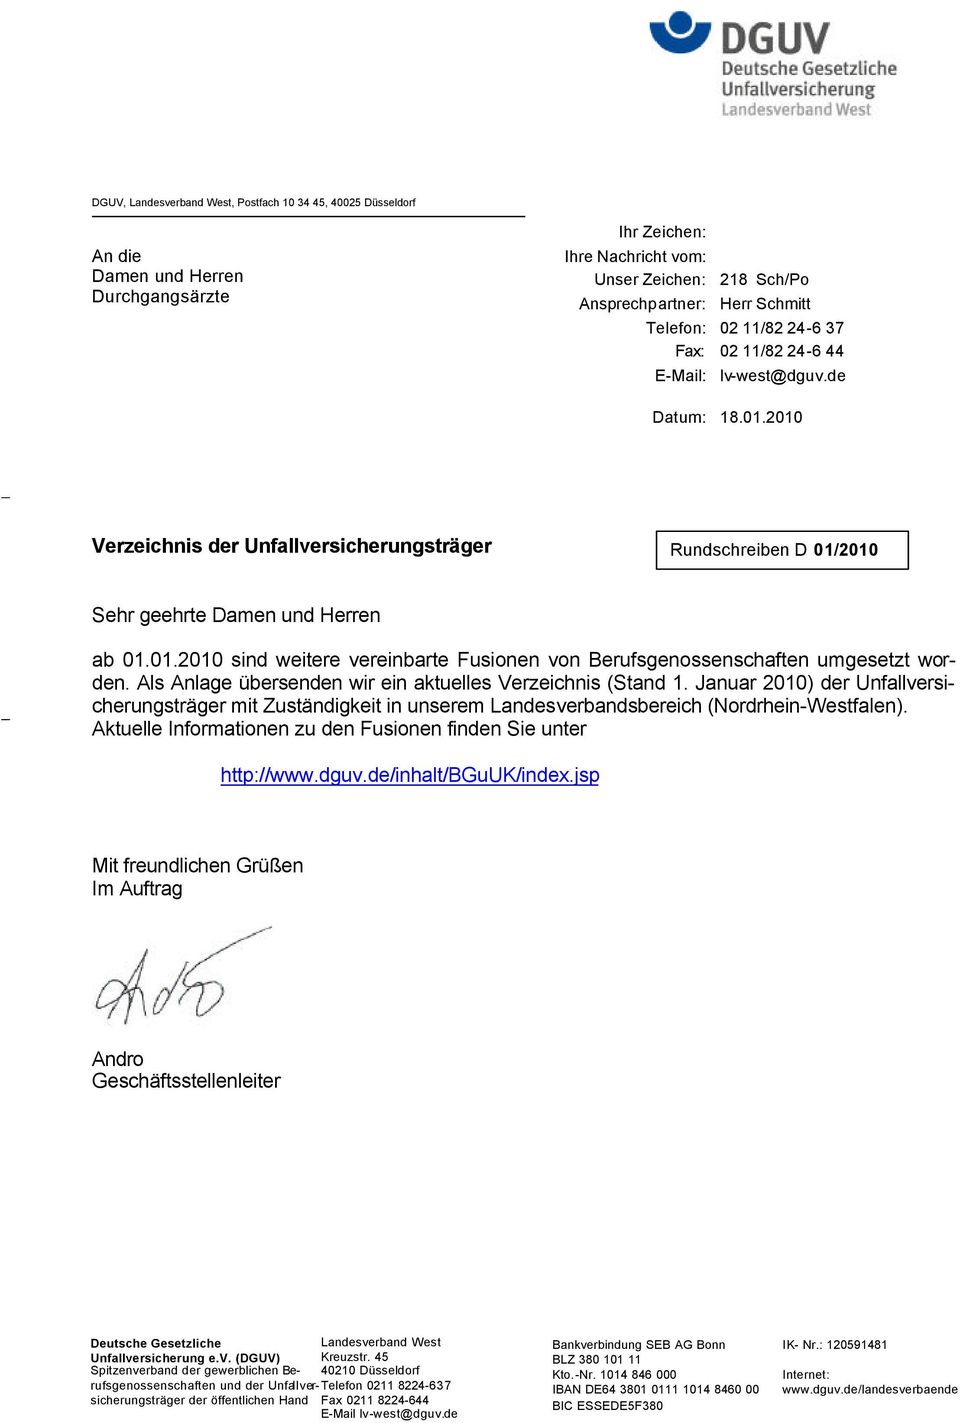 Als Anlage übersenden wir ein aktuelles Verzeichnis (Stand 1. Januar 2010) der Unfallversicherungsträger mit Zuständigkeit in unserem Landesverbandsbereich (Nordrhein-Westfalen).